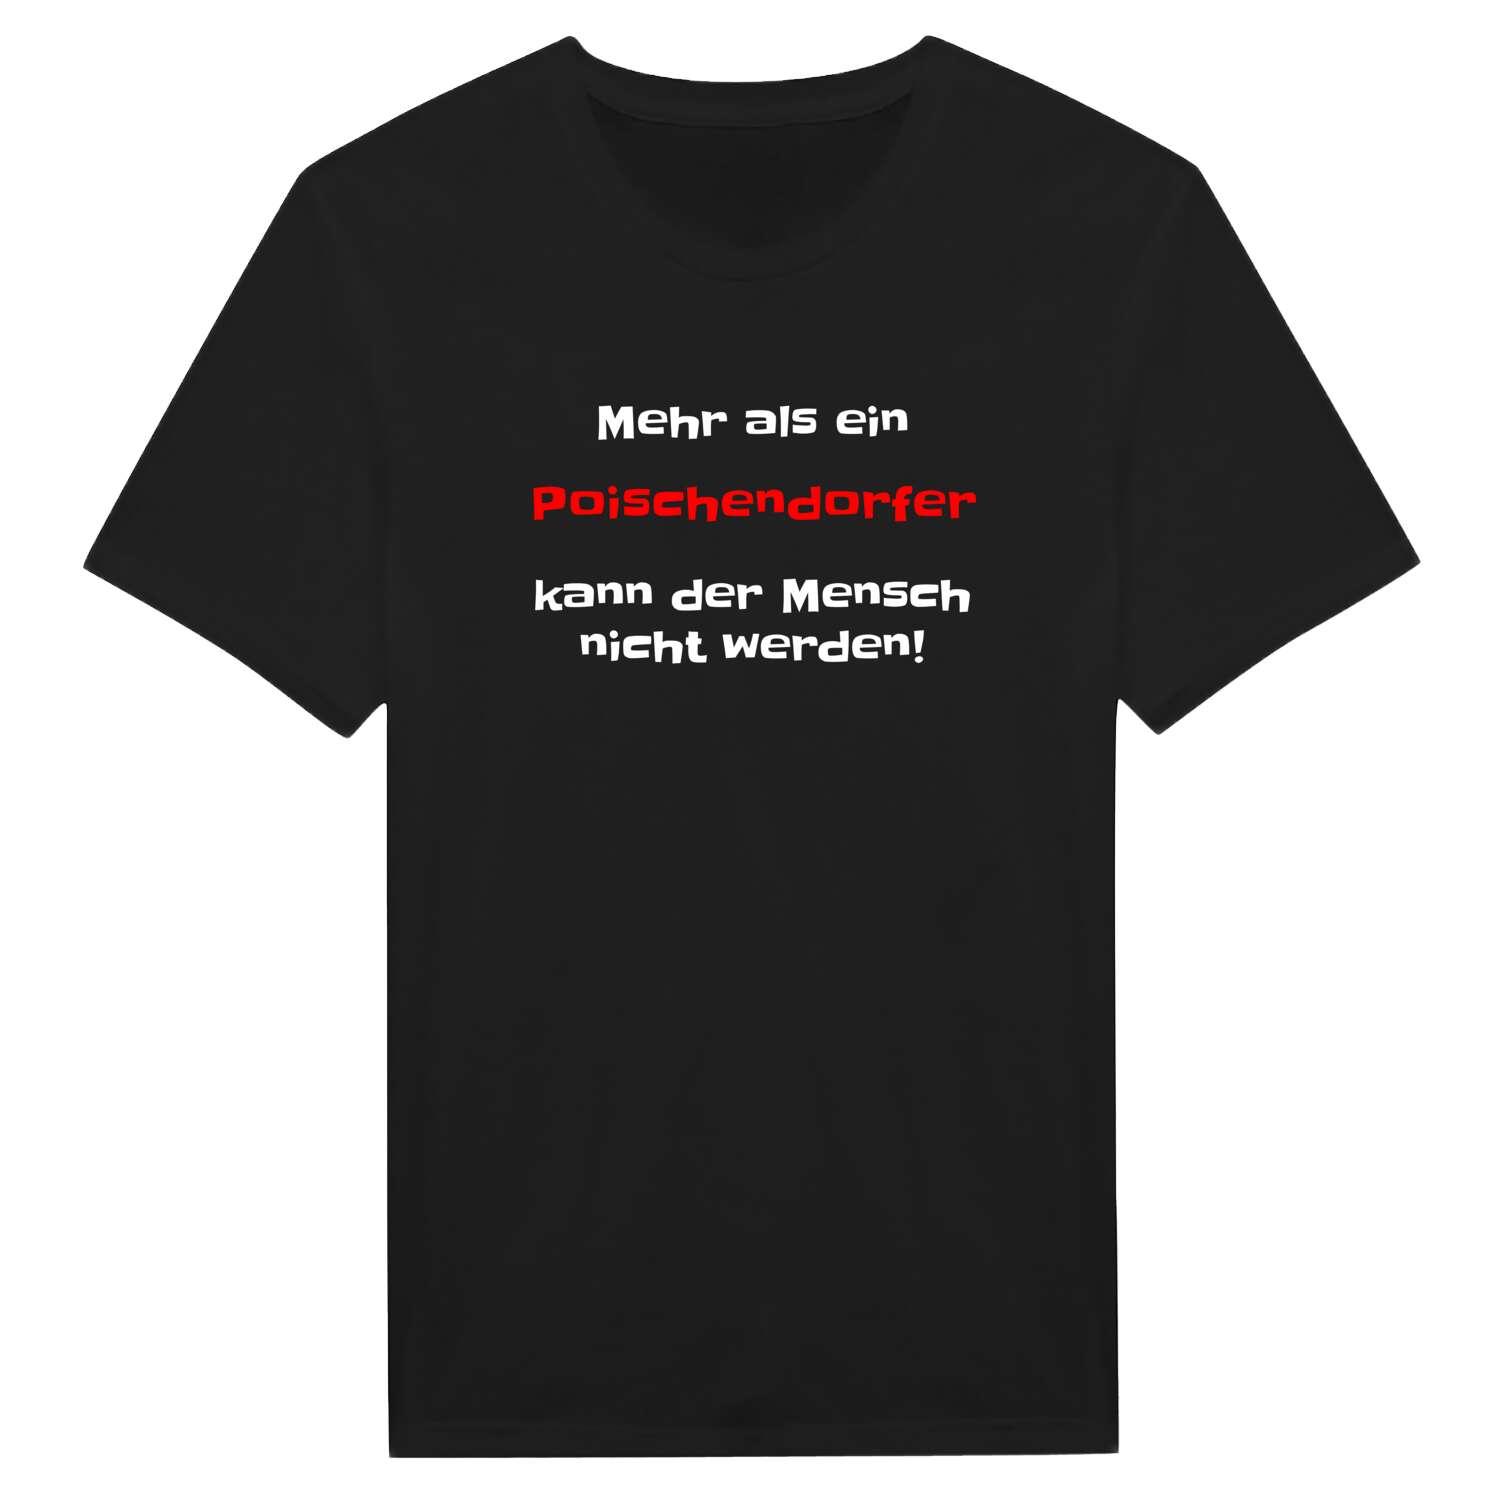 Poischendorf T-Shirt »Mehr als ein«